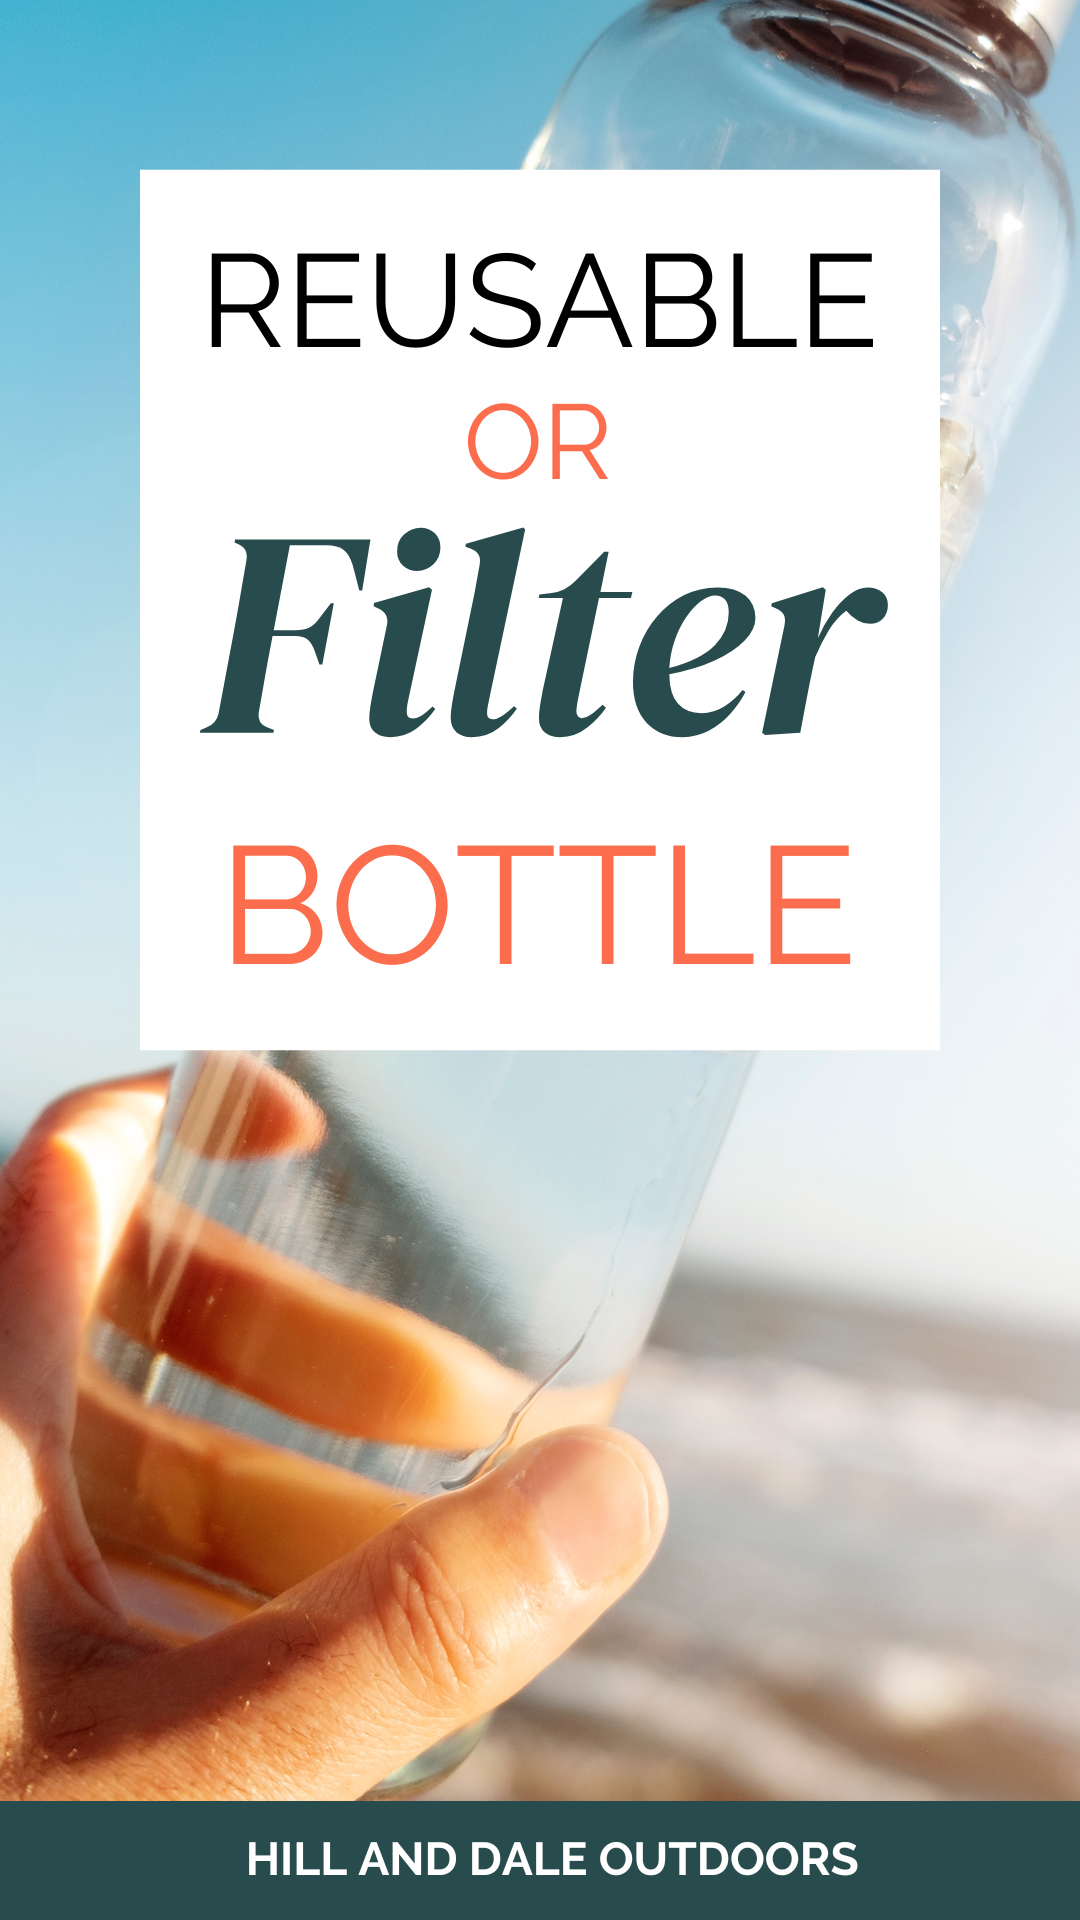 Reusable bottle vs filter bottles